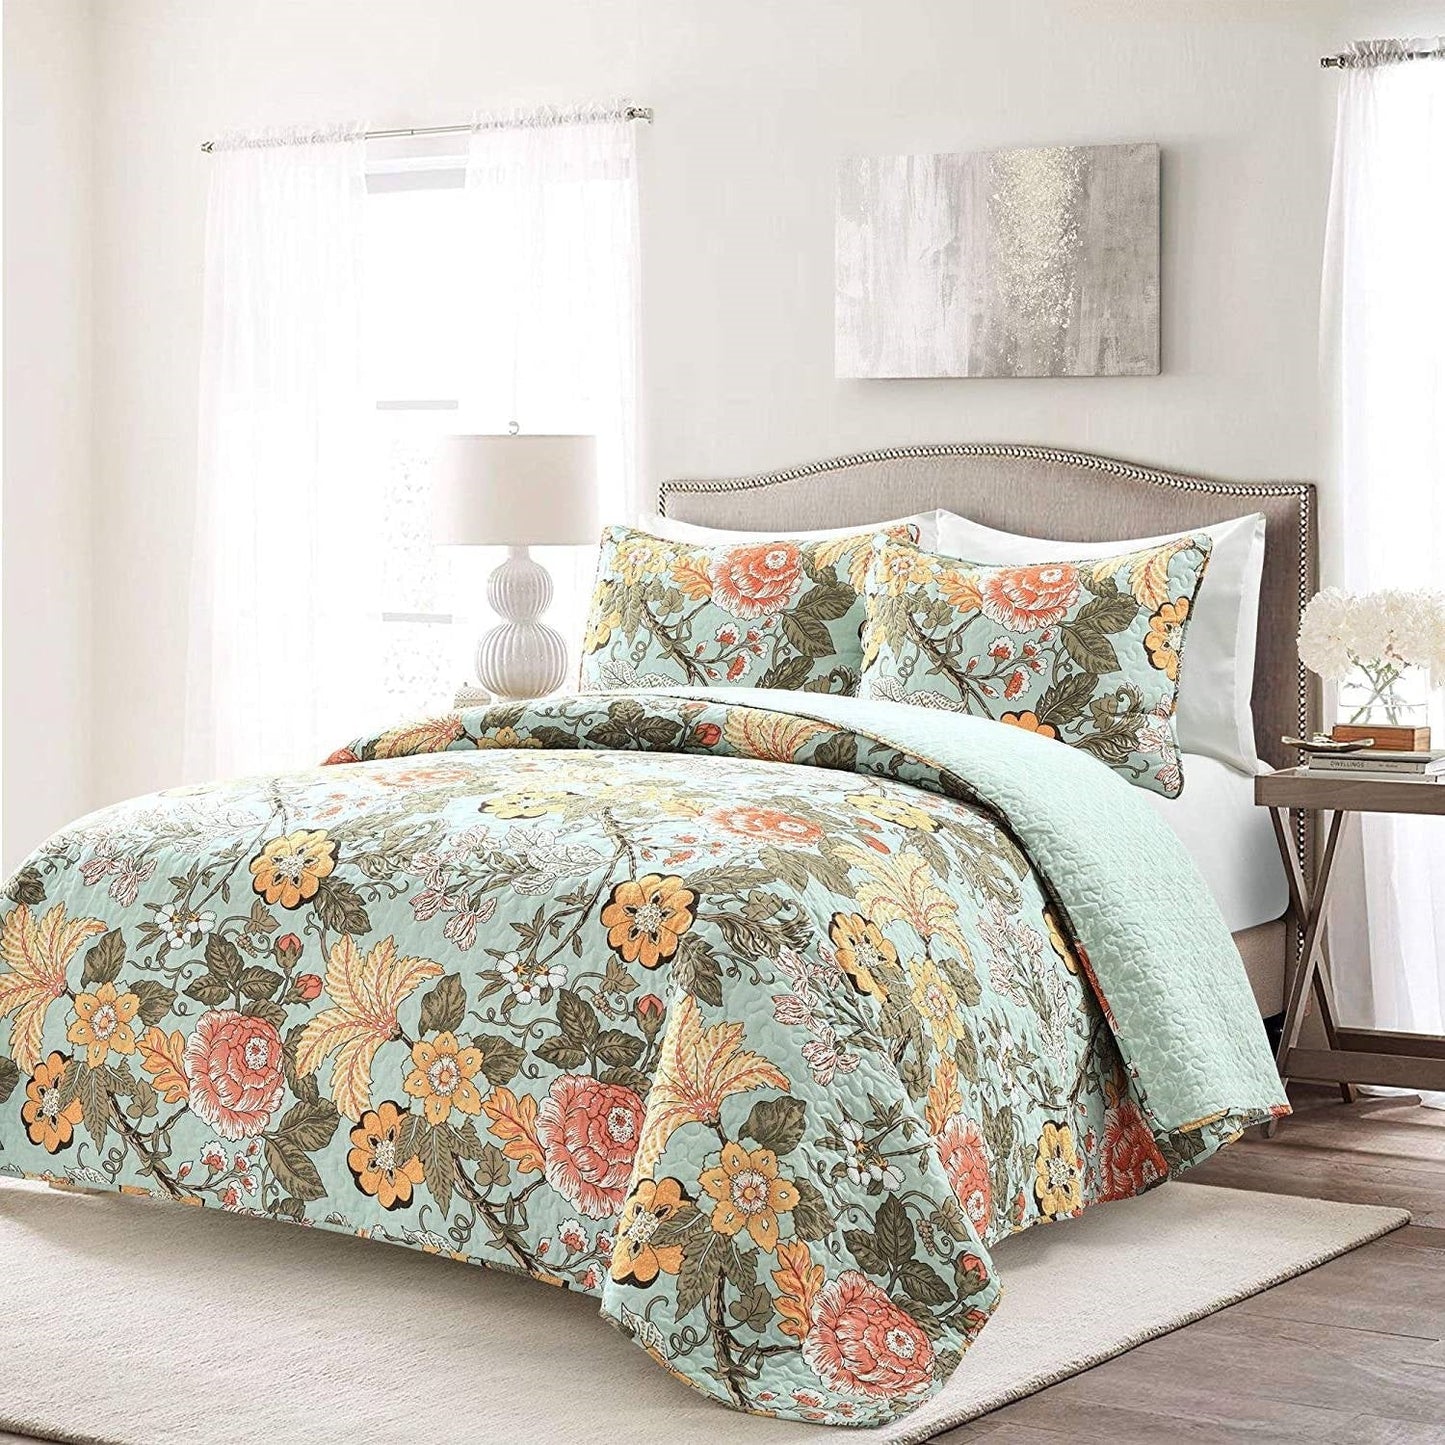 3 Piece FarmHouse Teal Floral Cotton Reversible Quilt Set, King-Novel Home